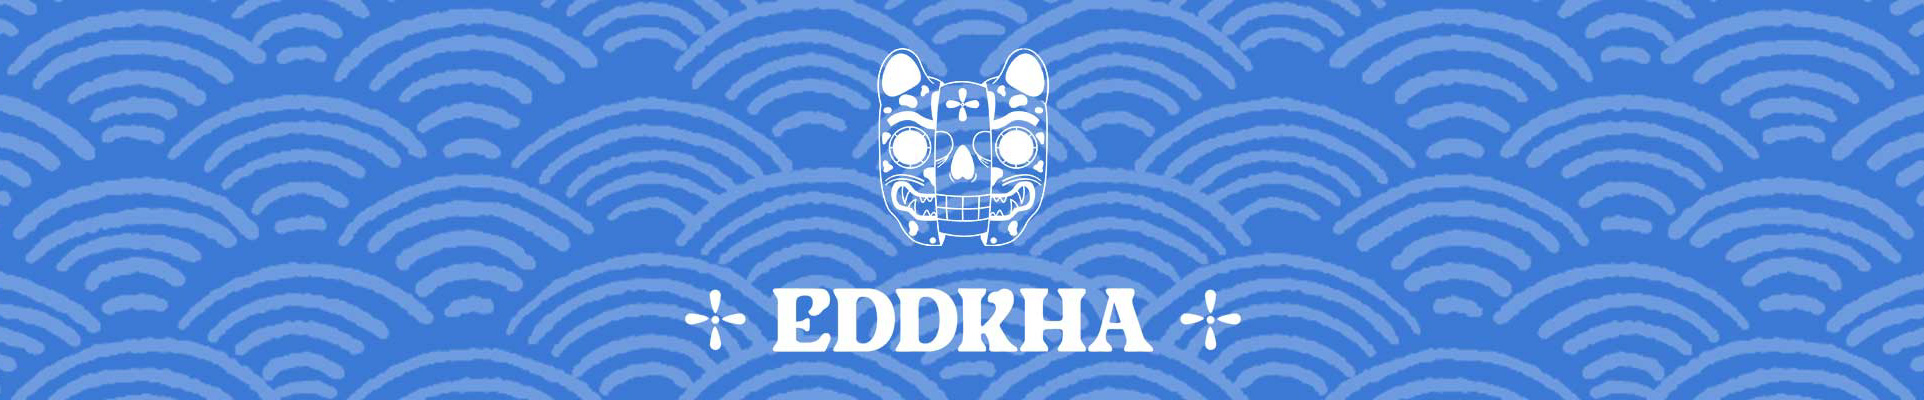 Eddkha . profil başlığı